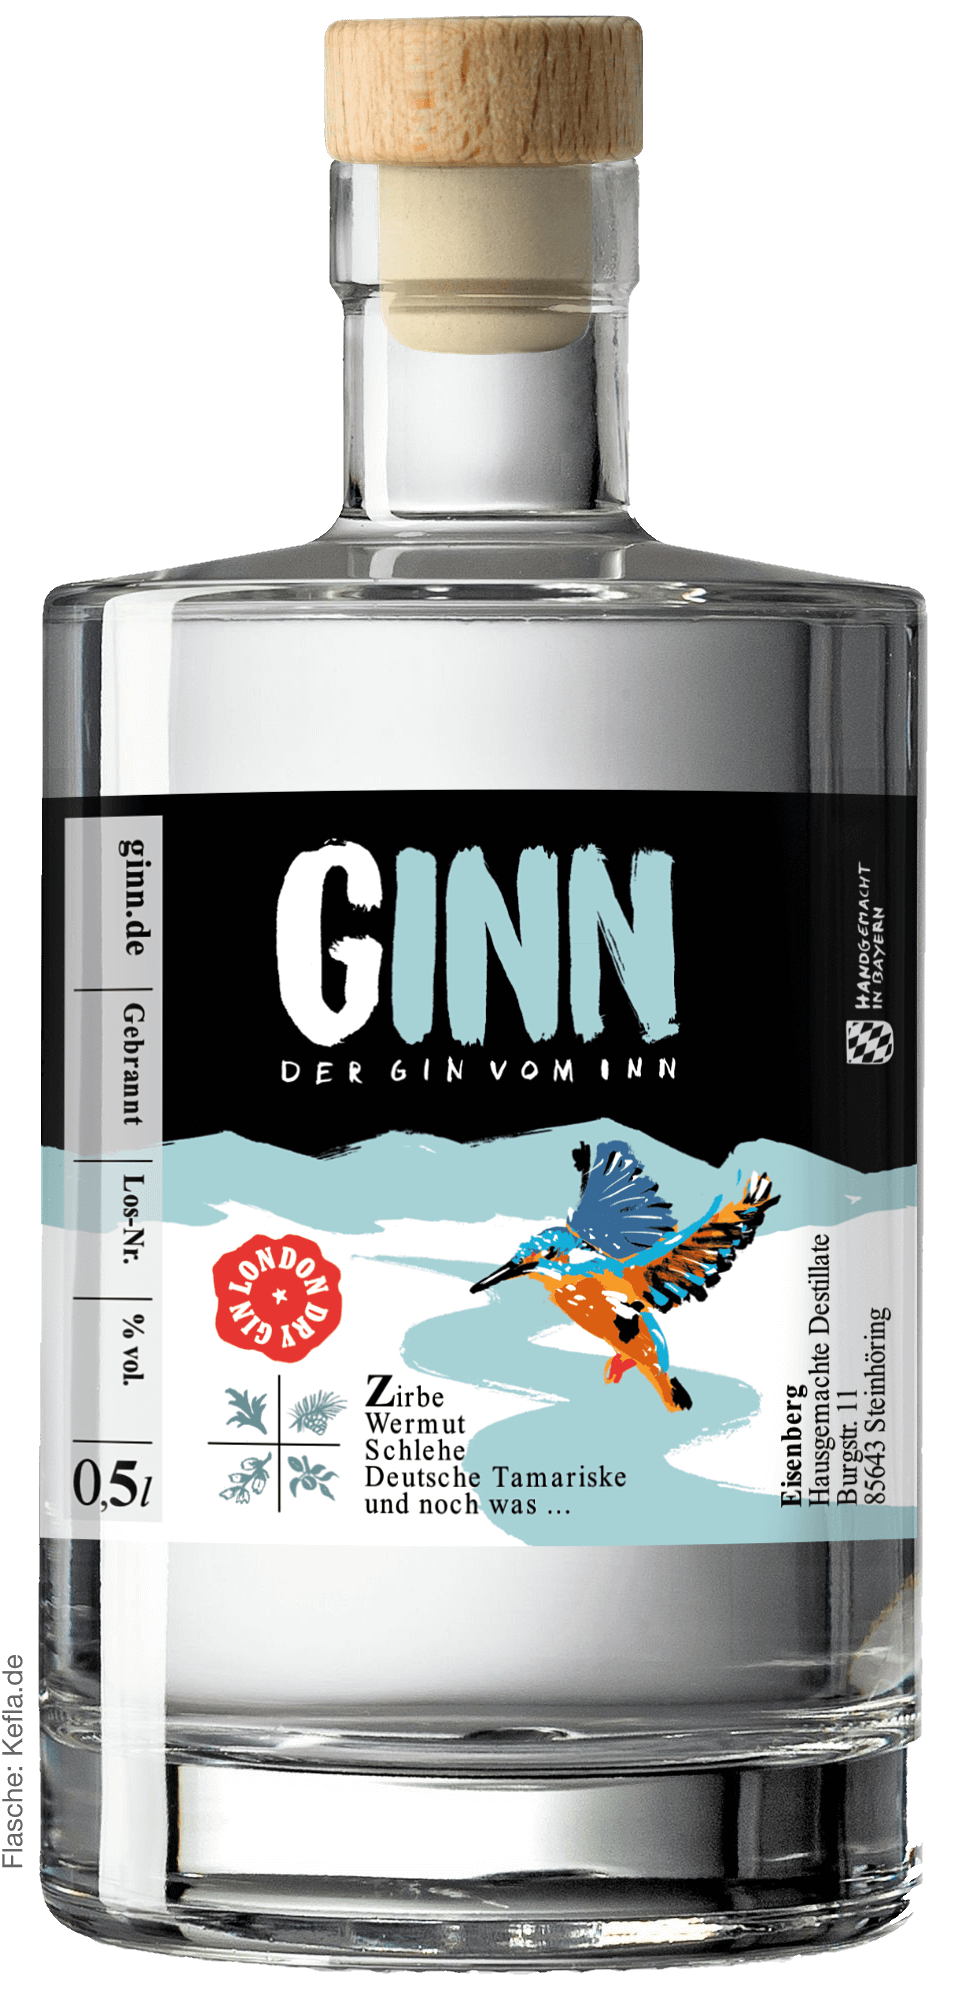 GINN – Der Gin vom Inn